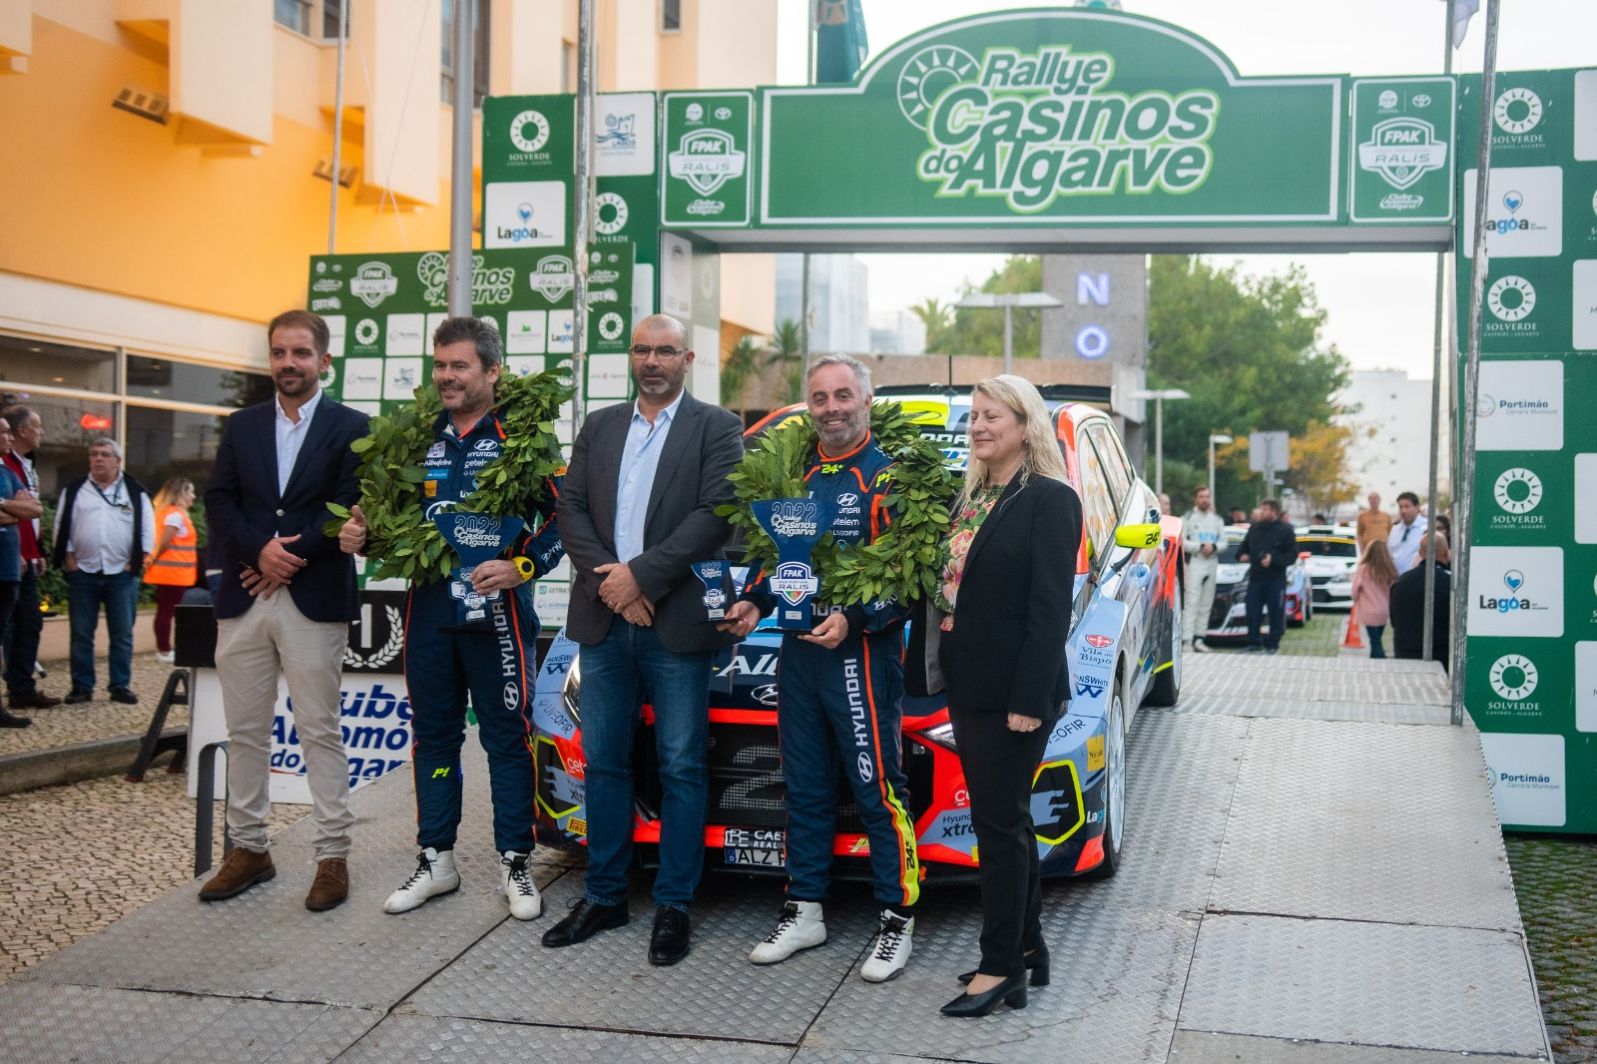 Ricardo Teodósio e José Teixeira vencem a taça de Portugal de ralis no Rallye Casinos do Algarve